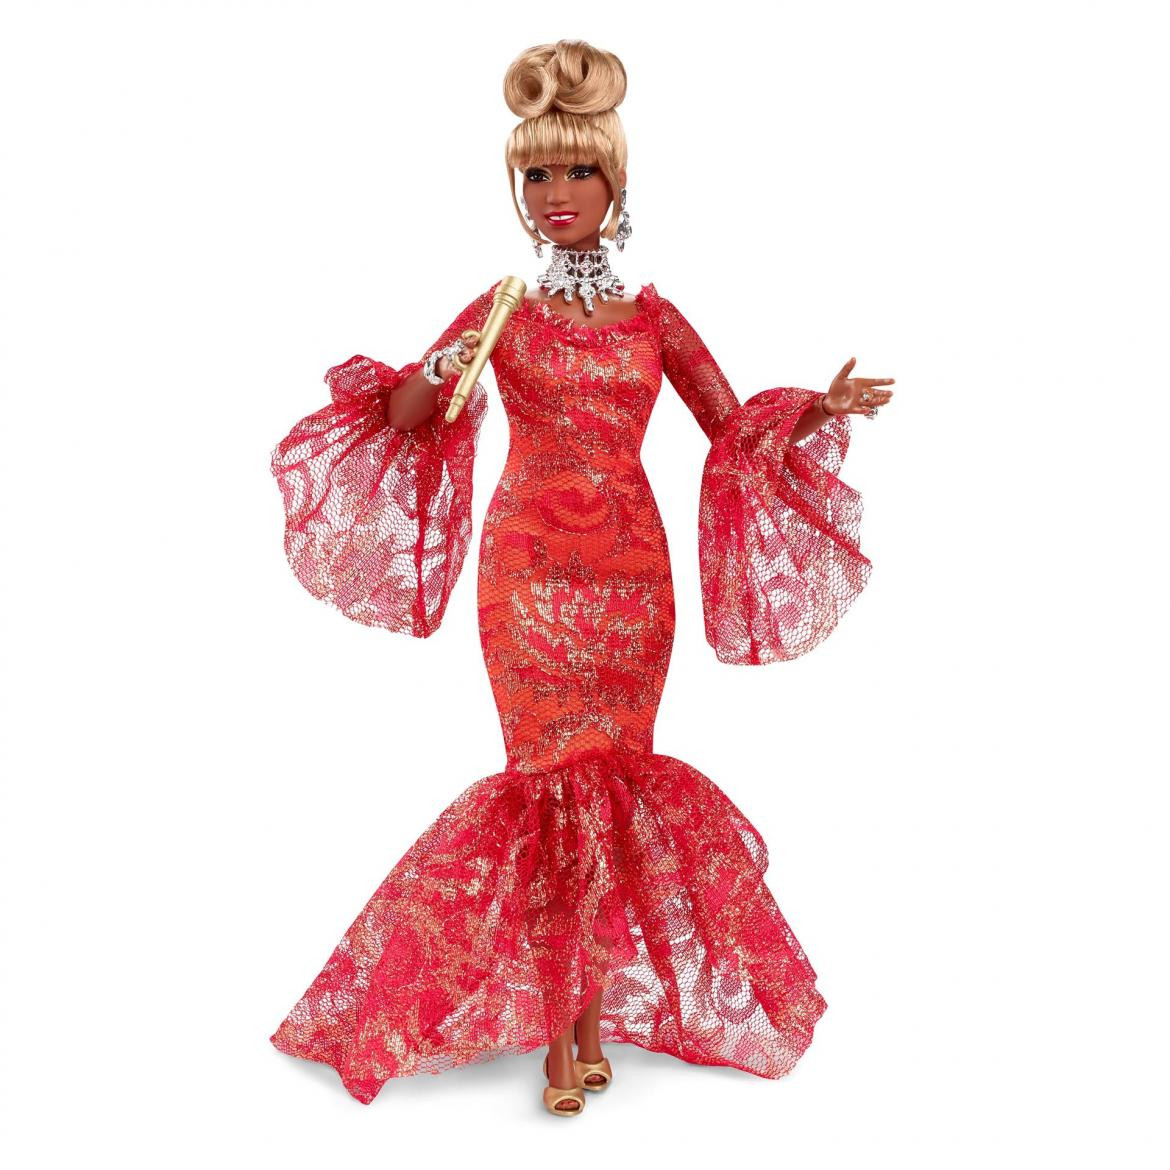 Barbie lanza nueva versión inspirada en Celia Cruz, EFE